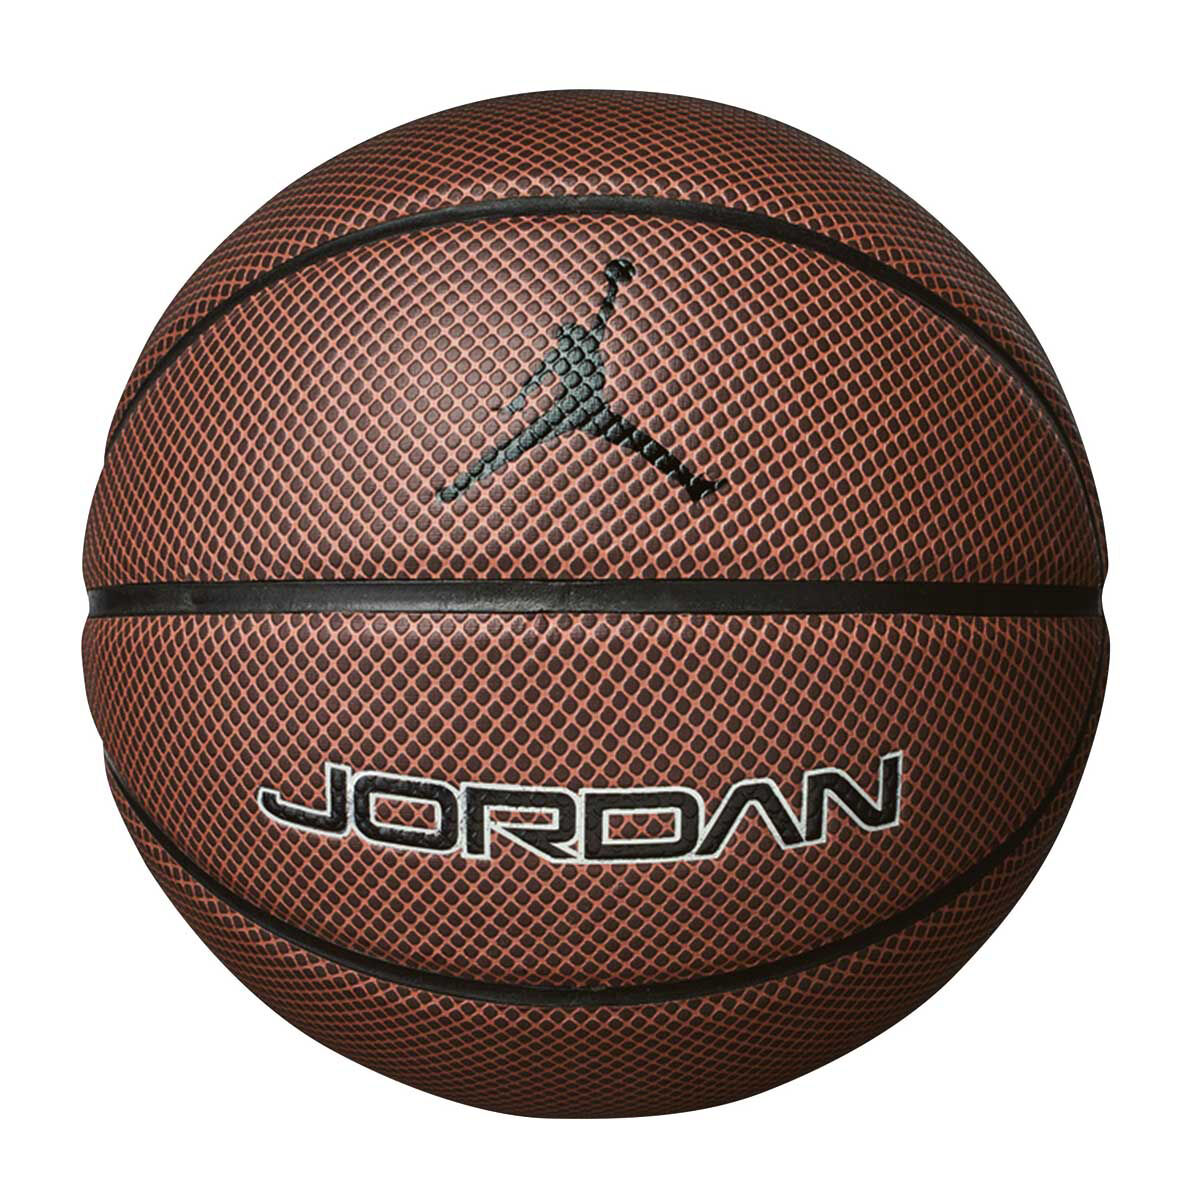 air jordan basketballs